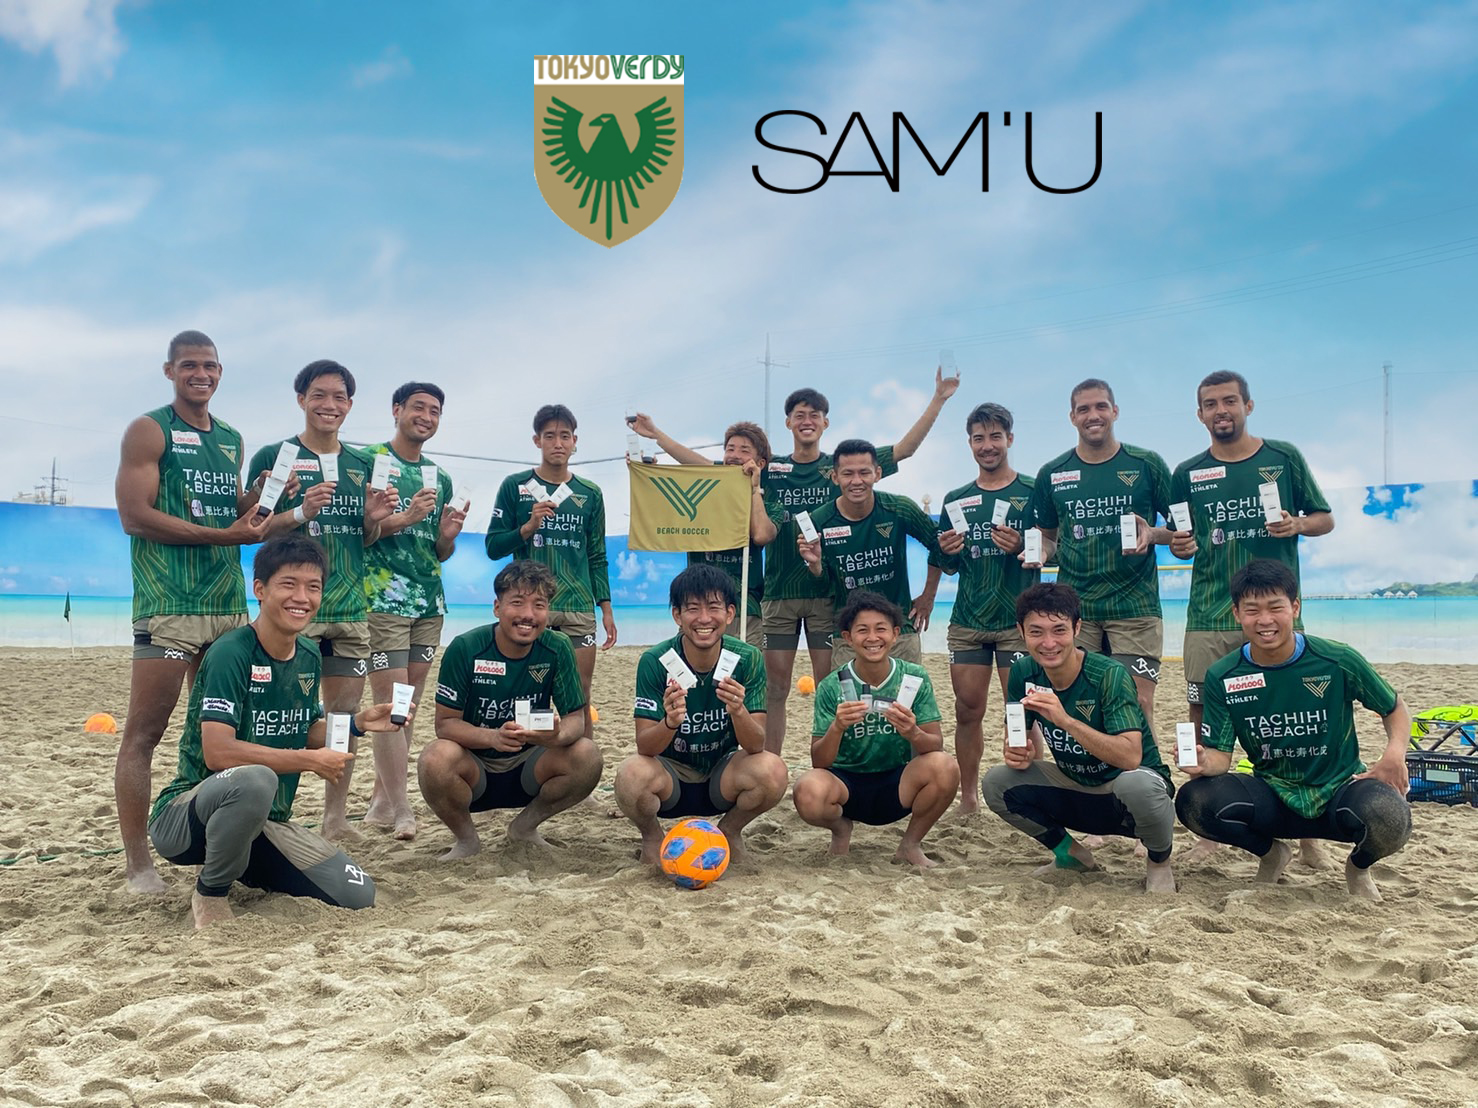 紫外線で酷使された肌をSAM’Uでうるおい補給。数々のベストコスメランキングを独占する〈SAM’U（サミュ）〉が、東京ヴェルディビーチサッカーチームとのオフィシャルサプライヤー契約締結。